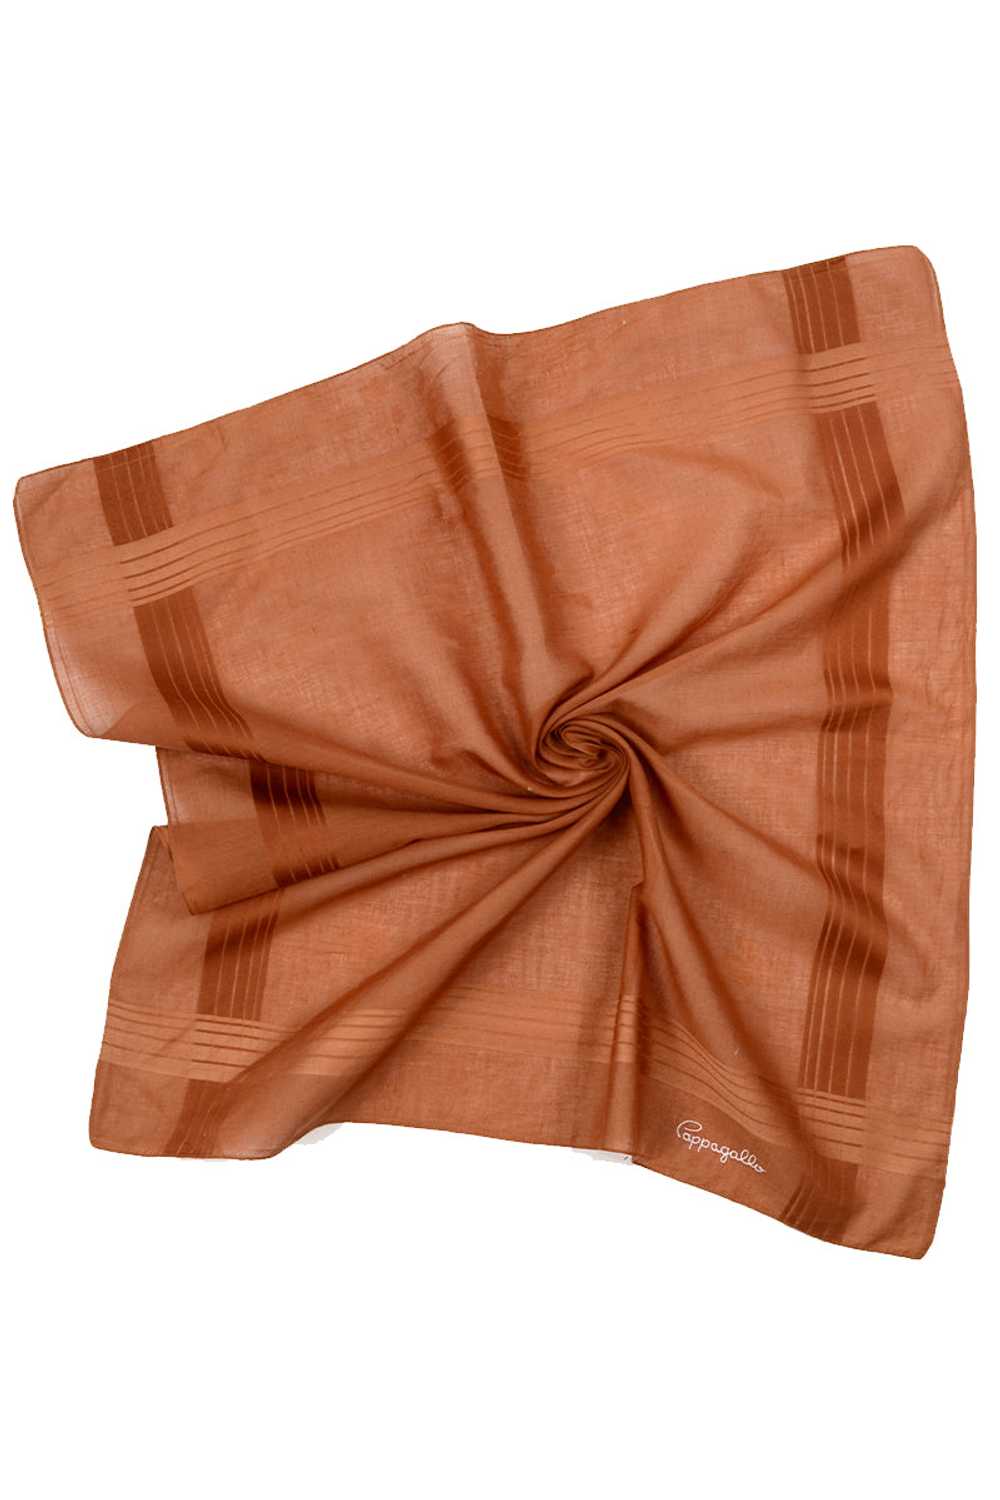 1970s Pappagallo Copper Brown Square Cotton Scarf - image 2